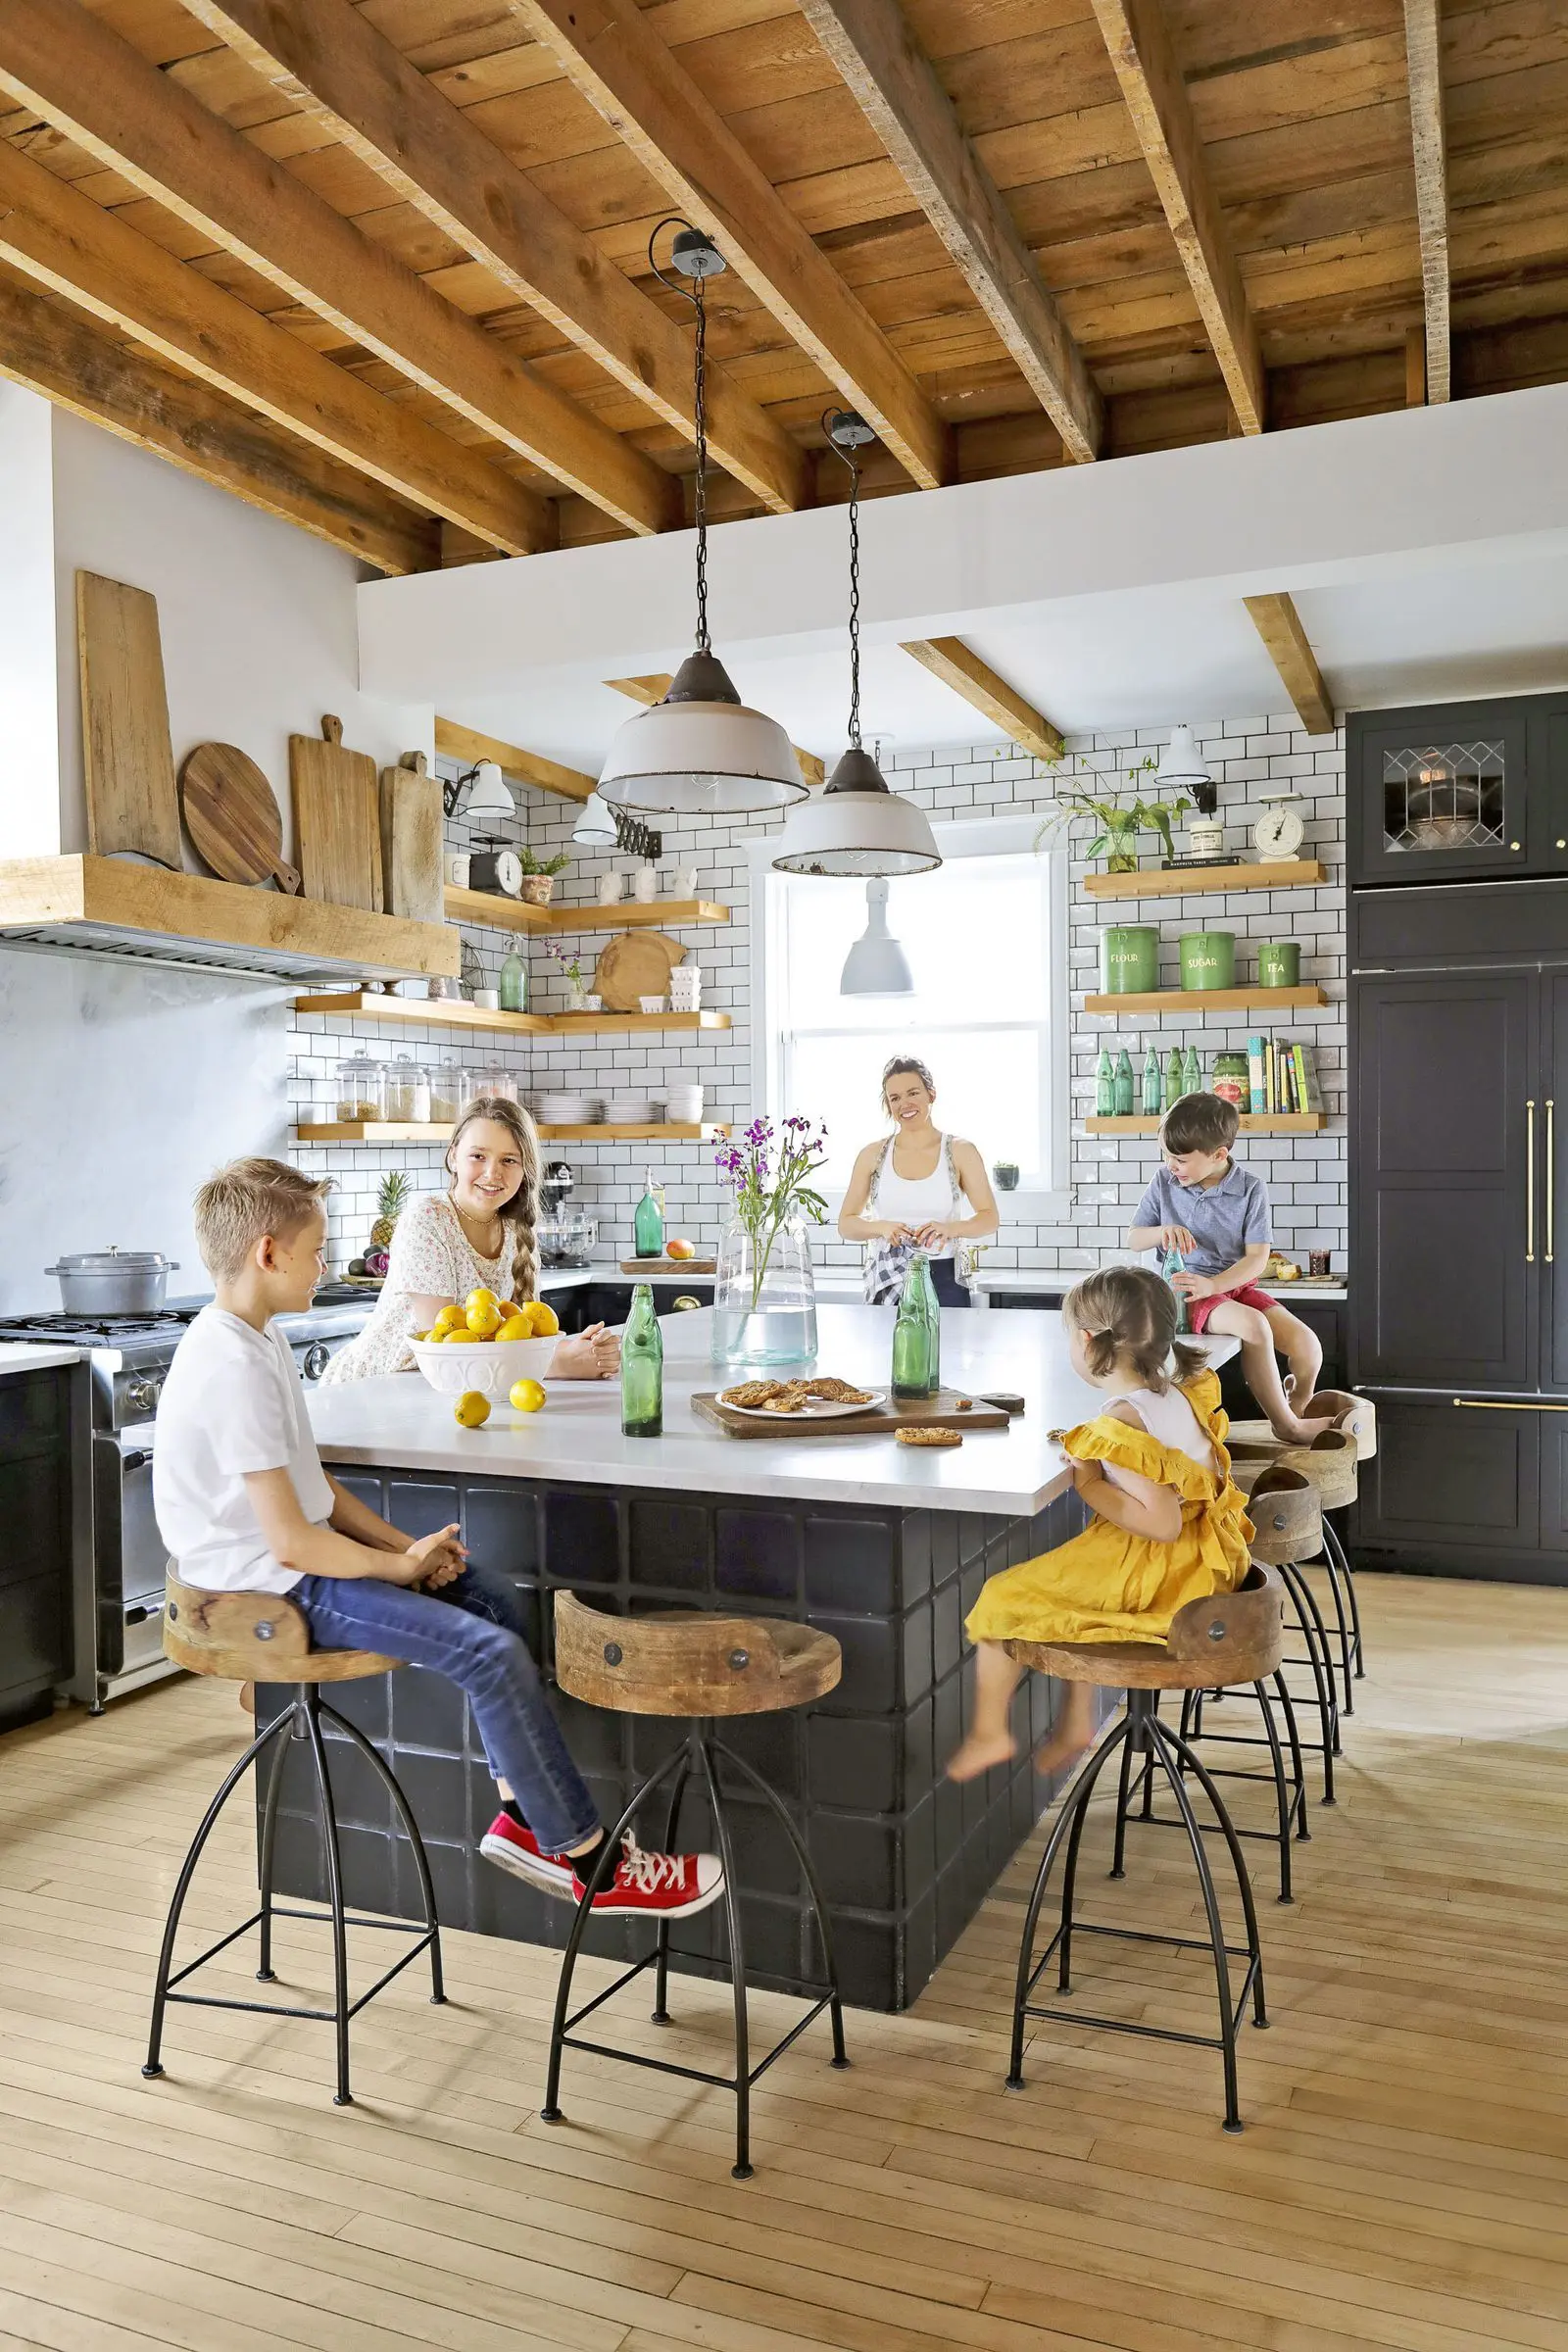 Simple & Functional European Farmhouse Style Kitchen Decor Ideas